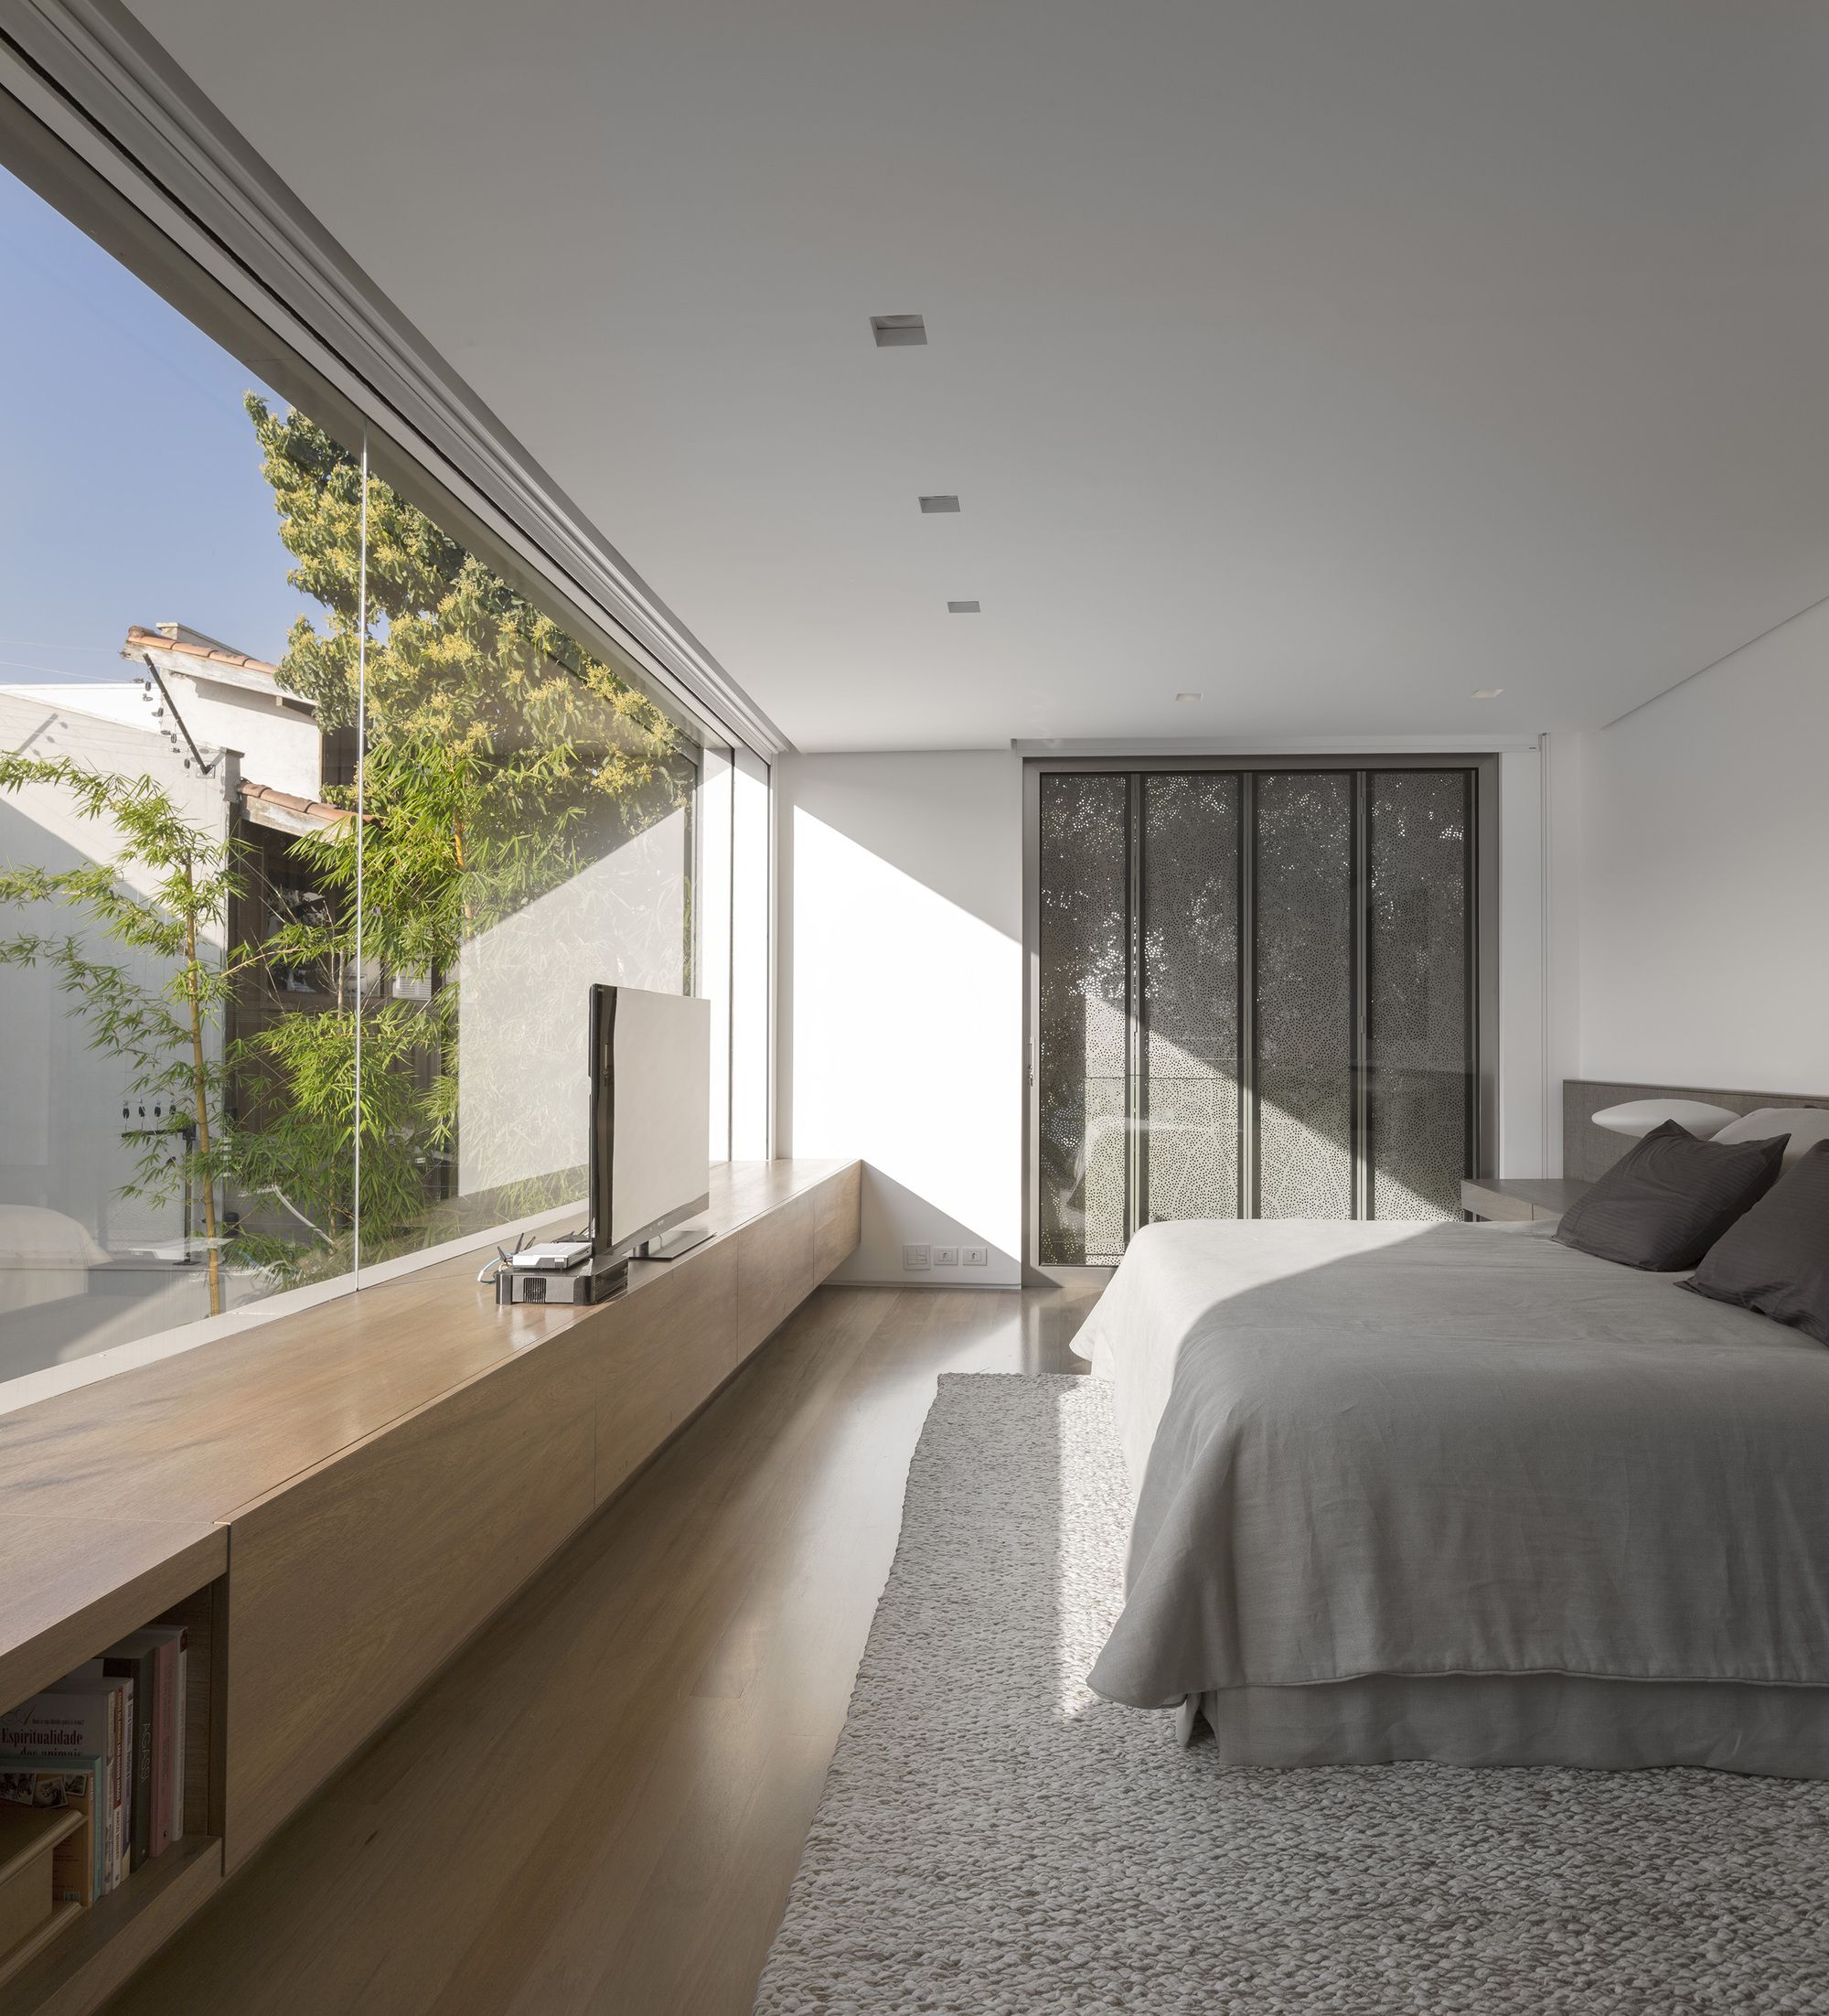 13 gợi ý thiết kế tường kính cho phòng ngủ để hưởng trọn tầm nhìn tuyệt đẹp bên ngoài - Ảnh 7.